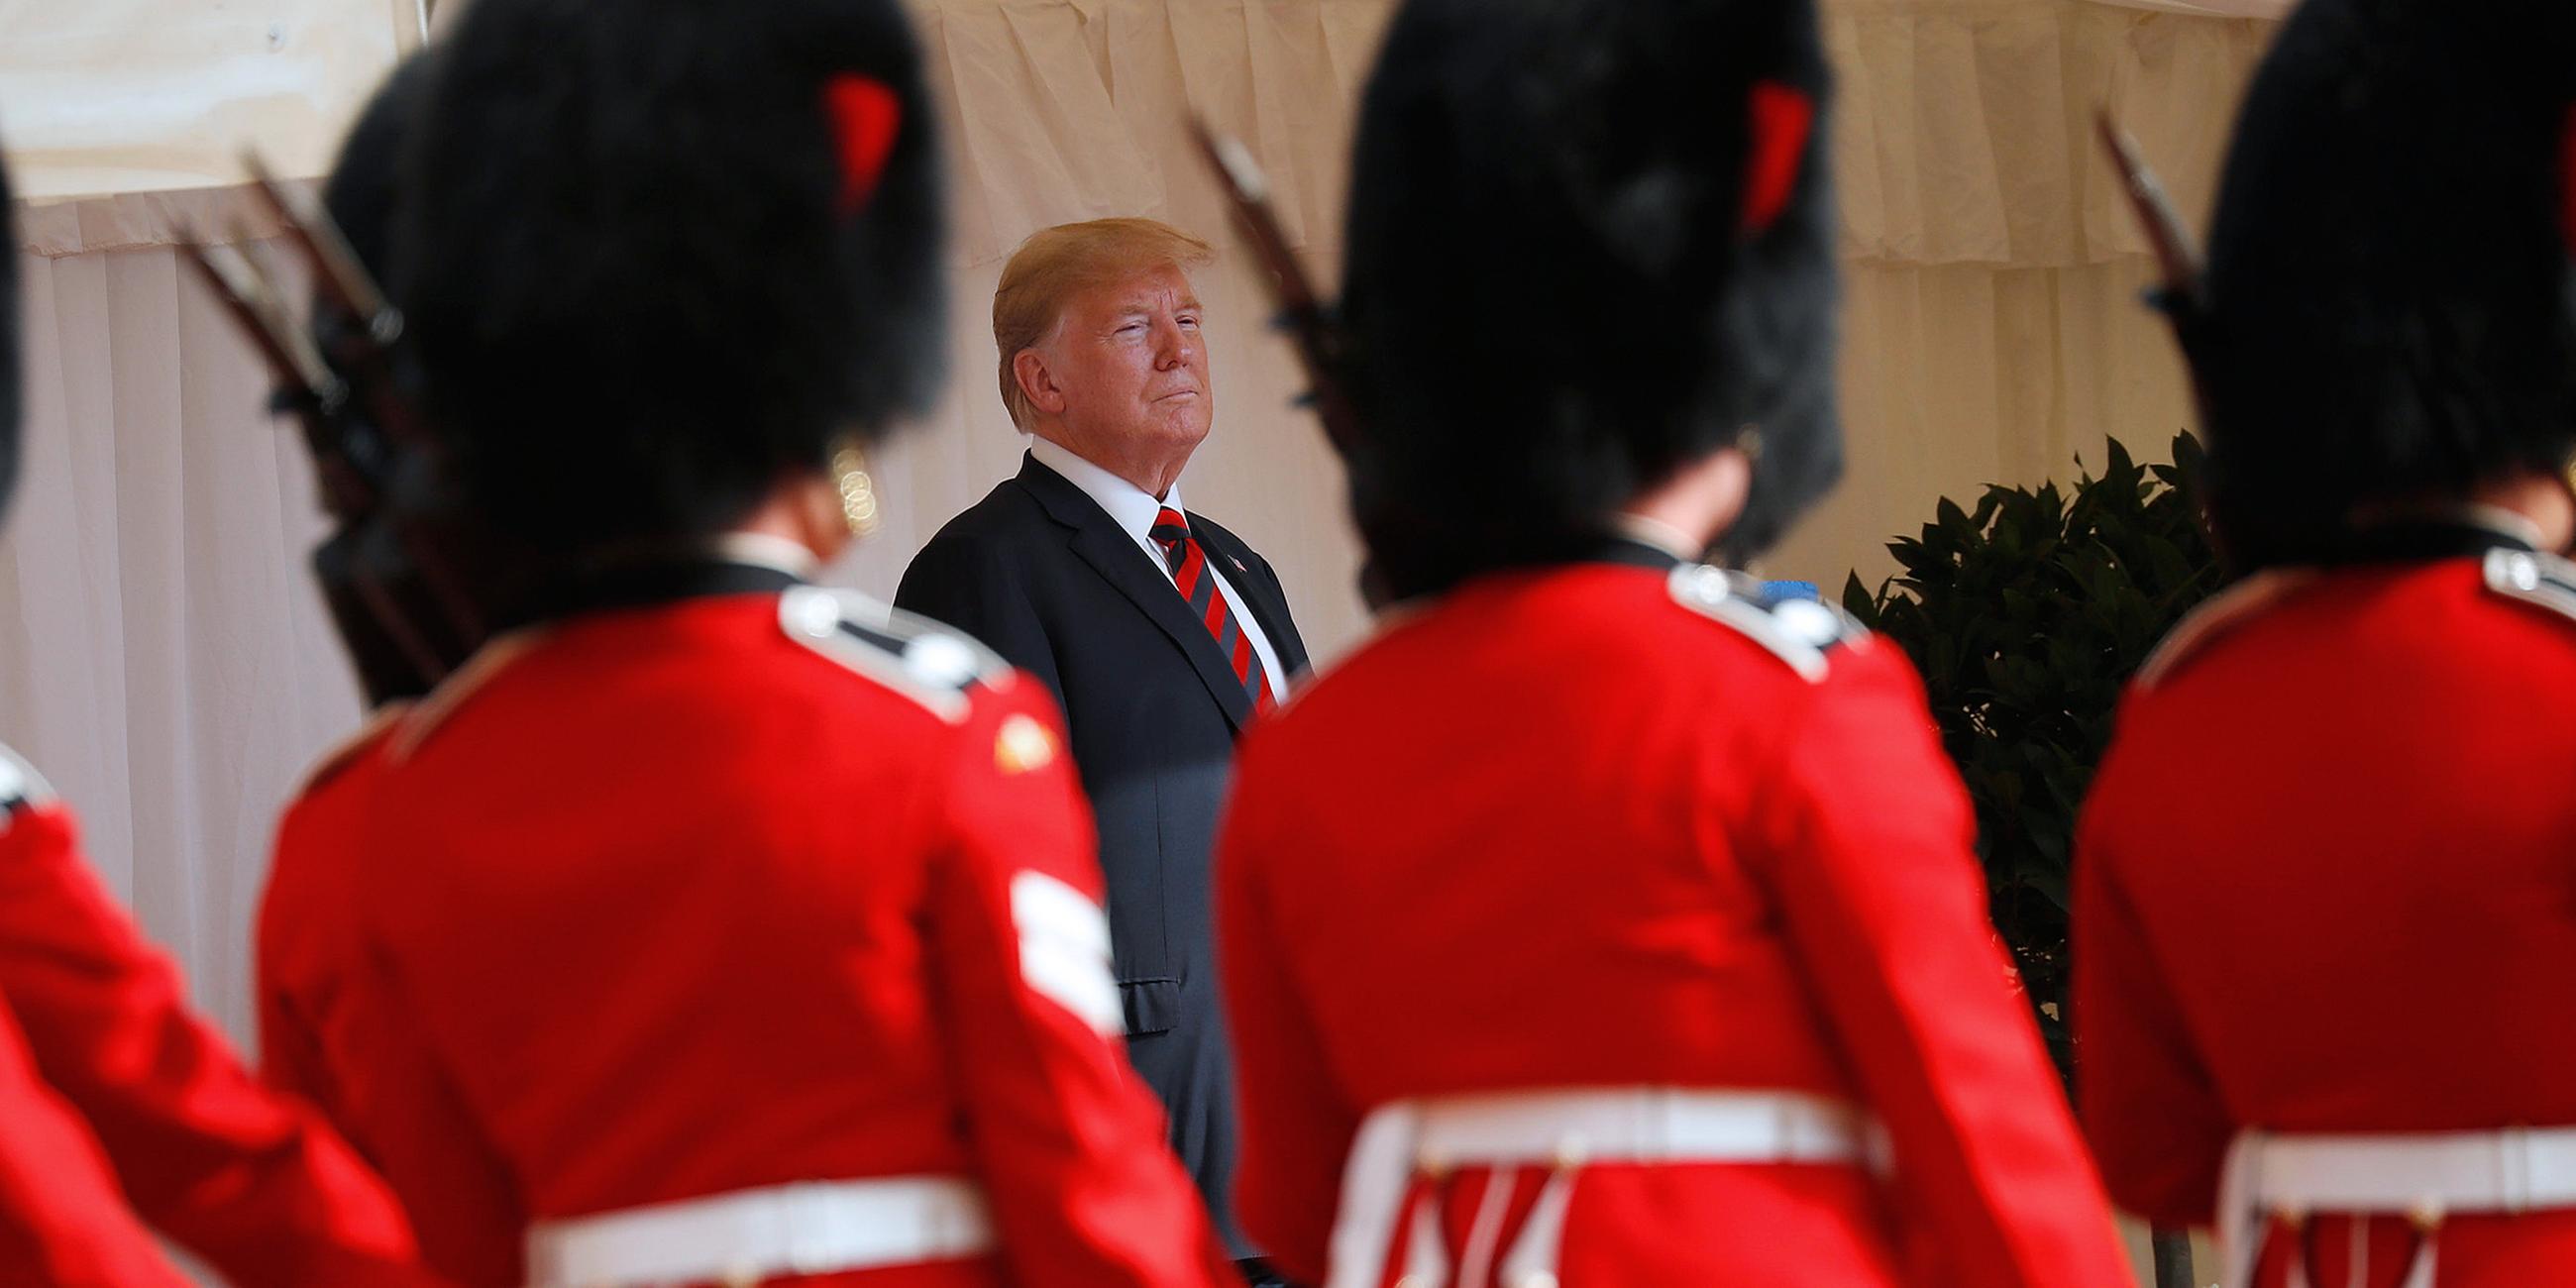 Donald Trump zu Besuch bei Queen Elizabeth II, aufgenommen am 13.07.2018 in Windsor, England